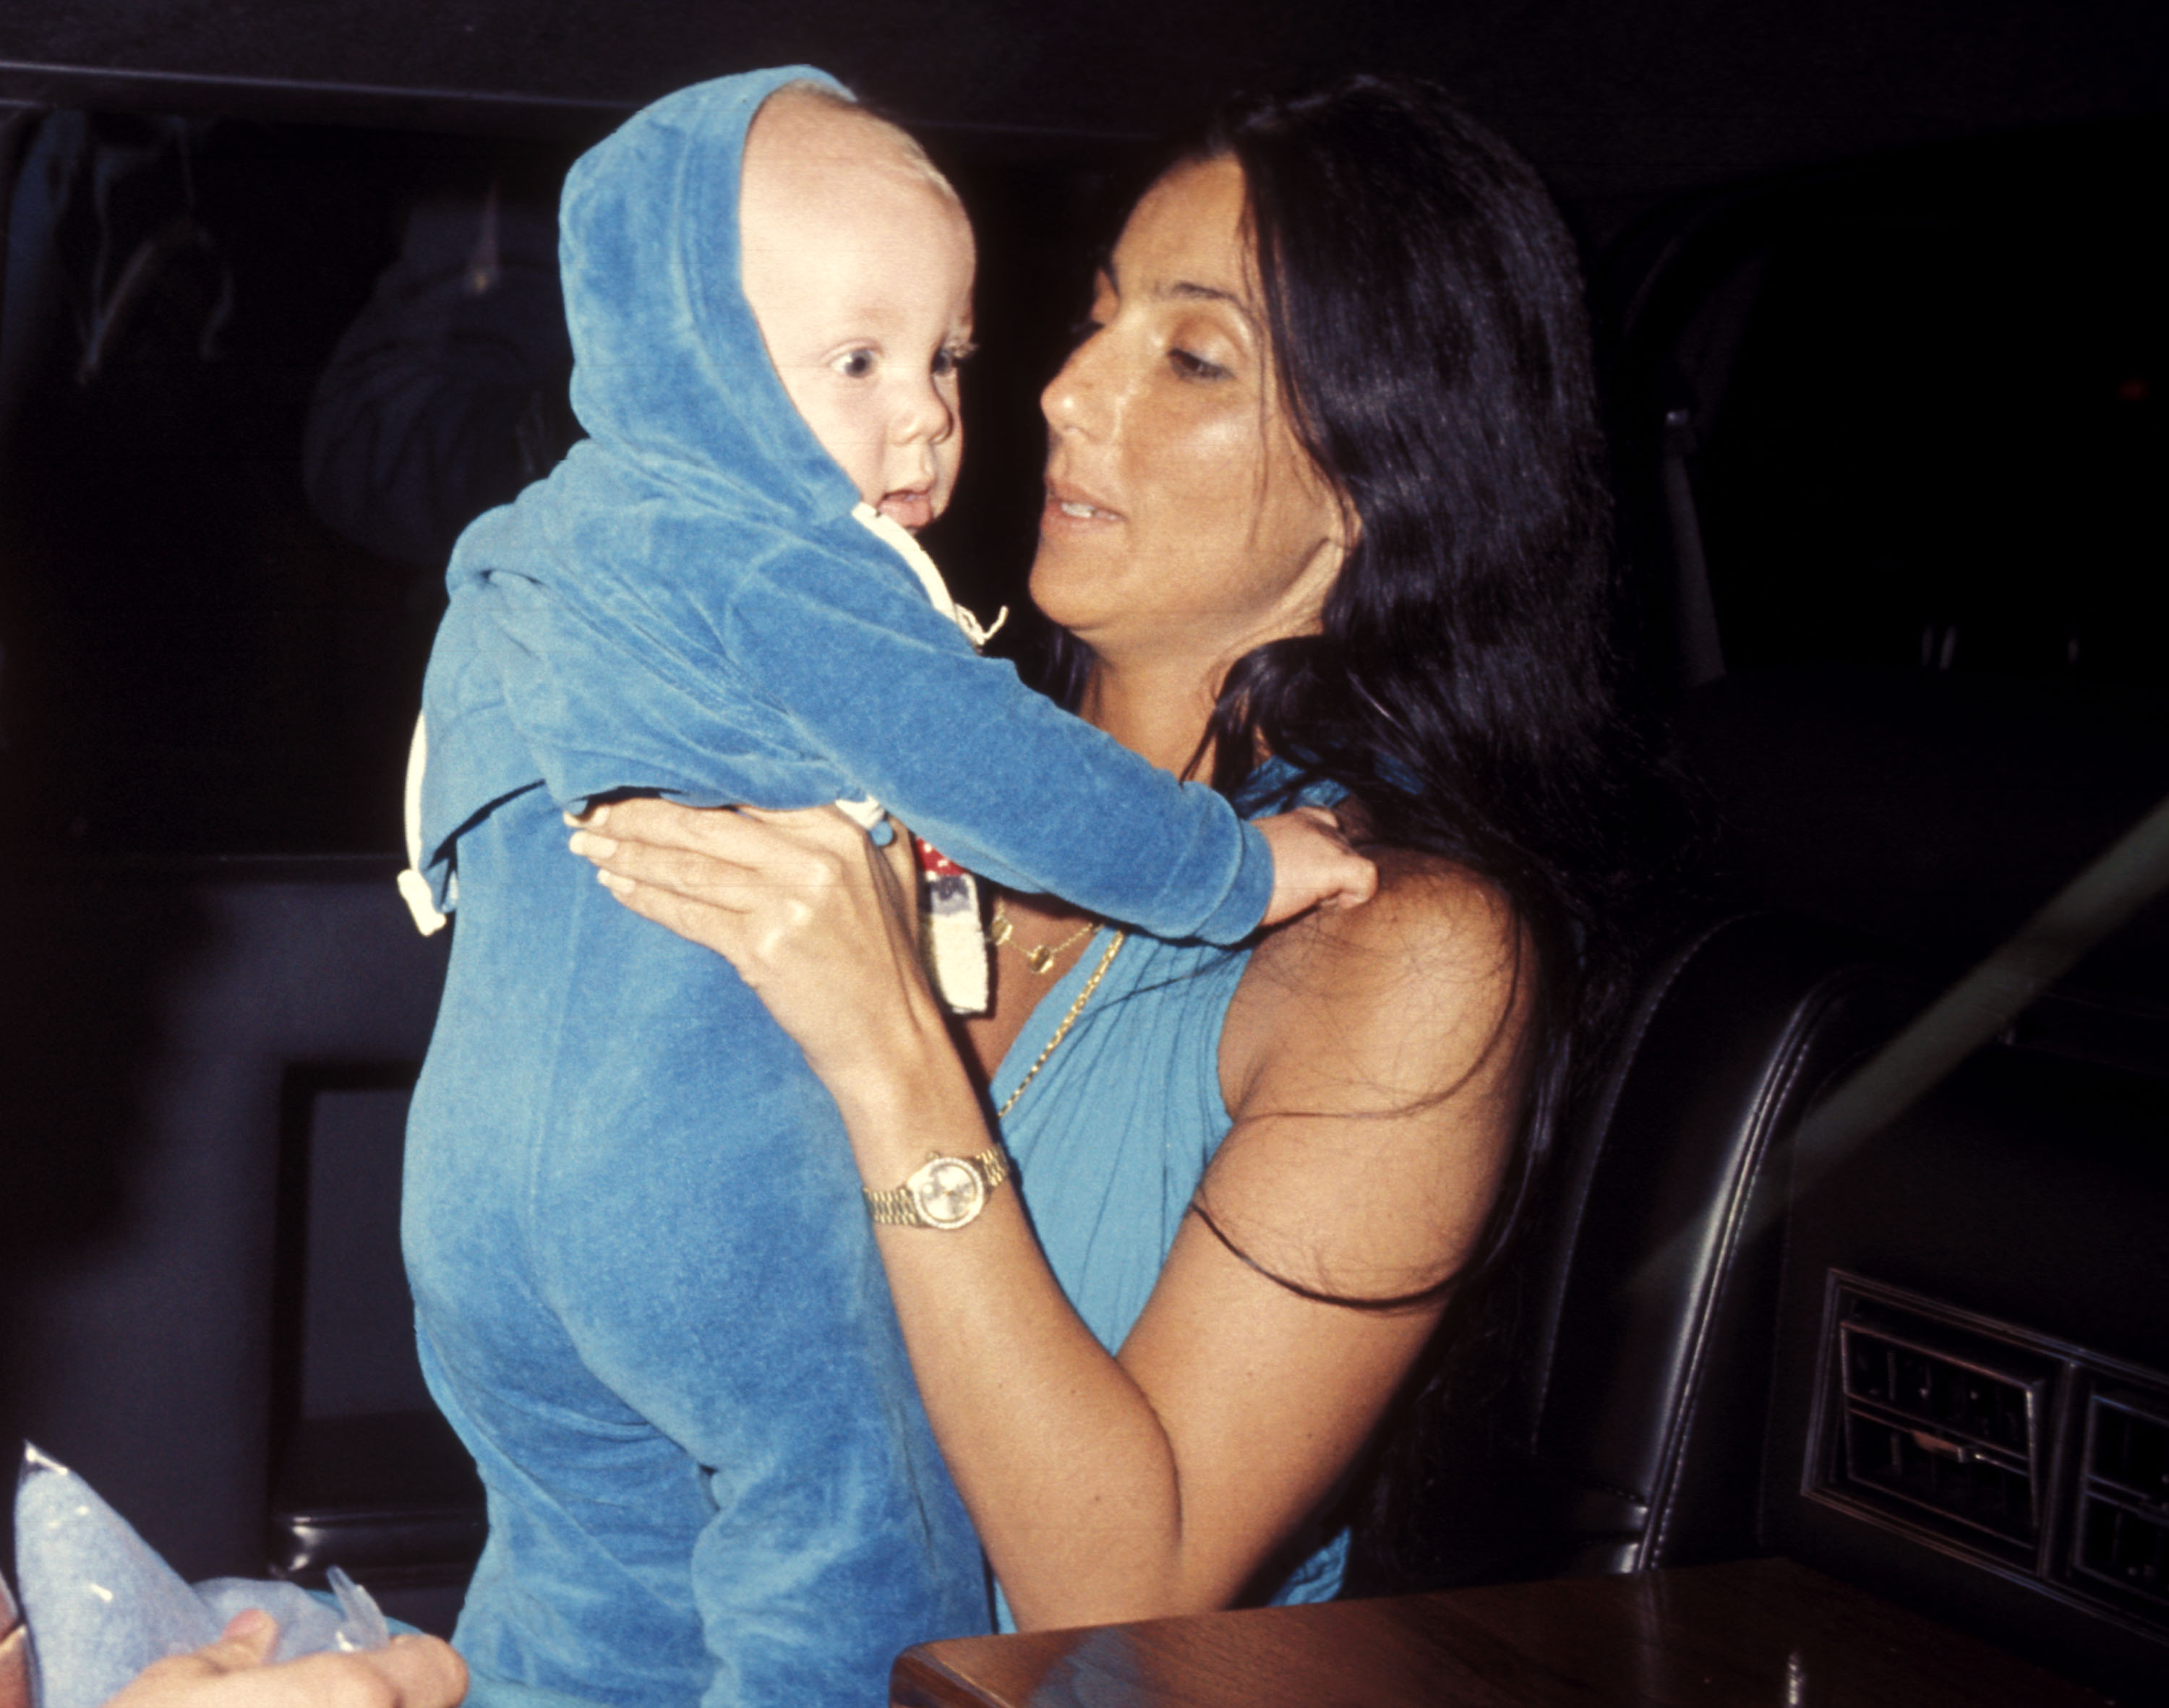 Cher et son fils Elijah Blue Allman le 20 mars 1977 à Los Angeles, Californie | Source : Getty Images